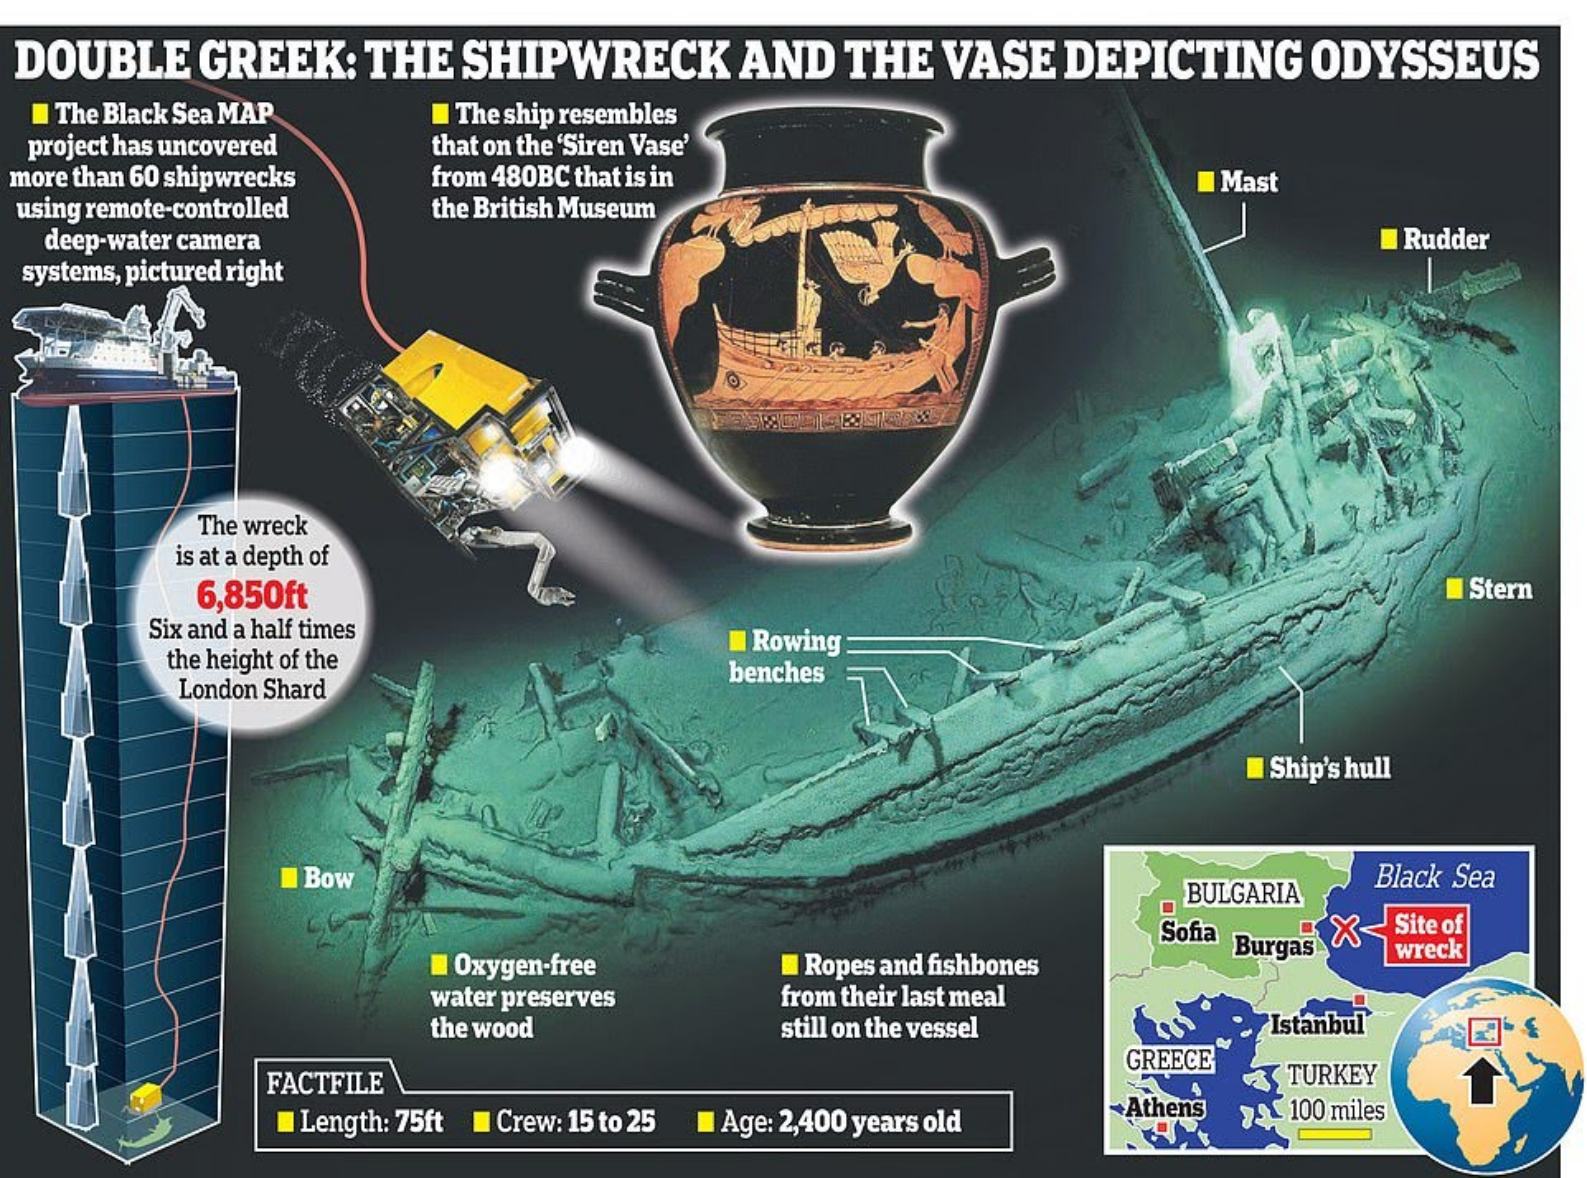 Opdagelsen blev gjort af et team af forskere fra Black Sea Maritime Archaeology Project (MAP), som har foretaget undersøgelser i området i de sidste tre år. Holdet brugte avanceret undervandsrobotteknologi til at udforske havbunden og opdagede skibsvraget over 1.3 miles under overfladen.